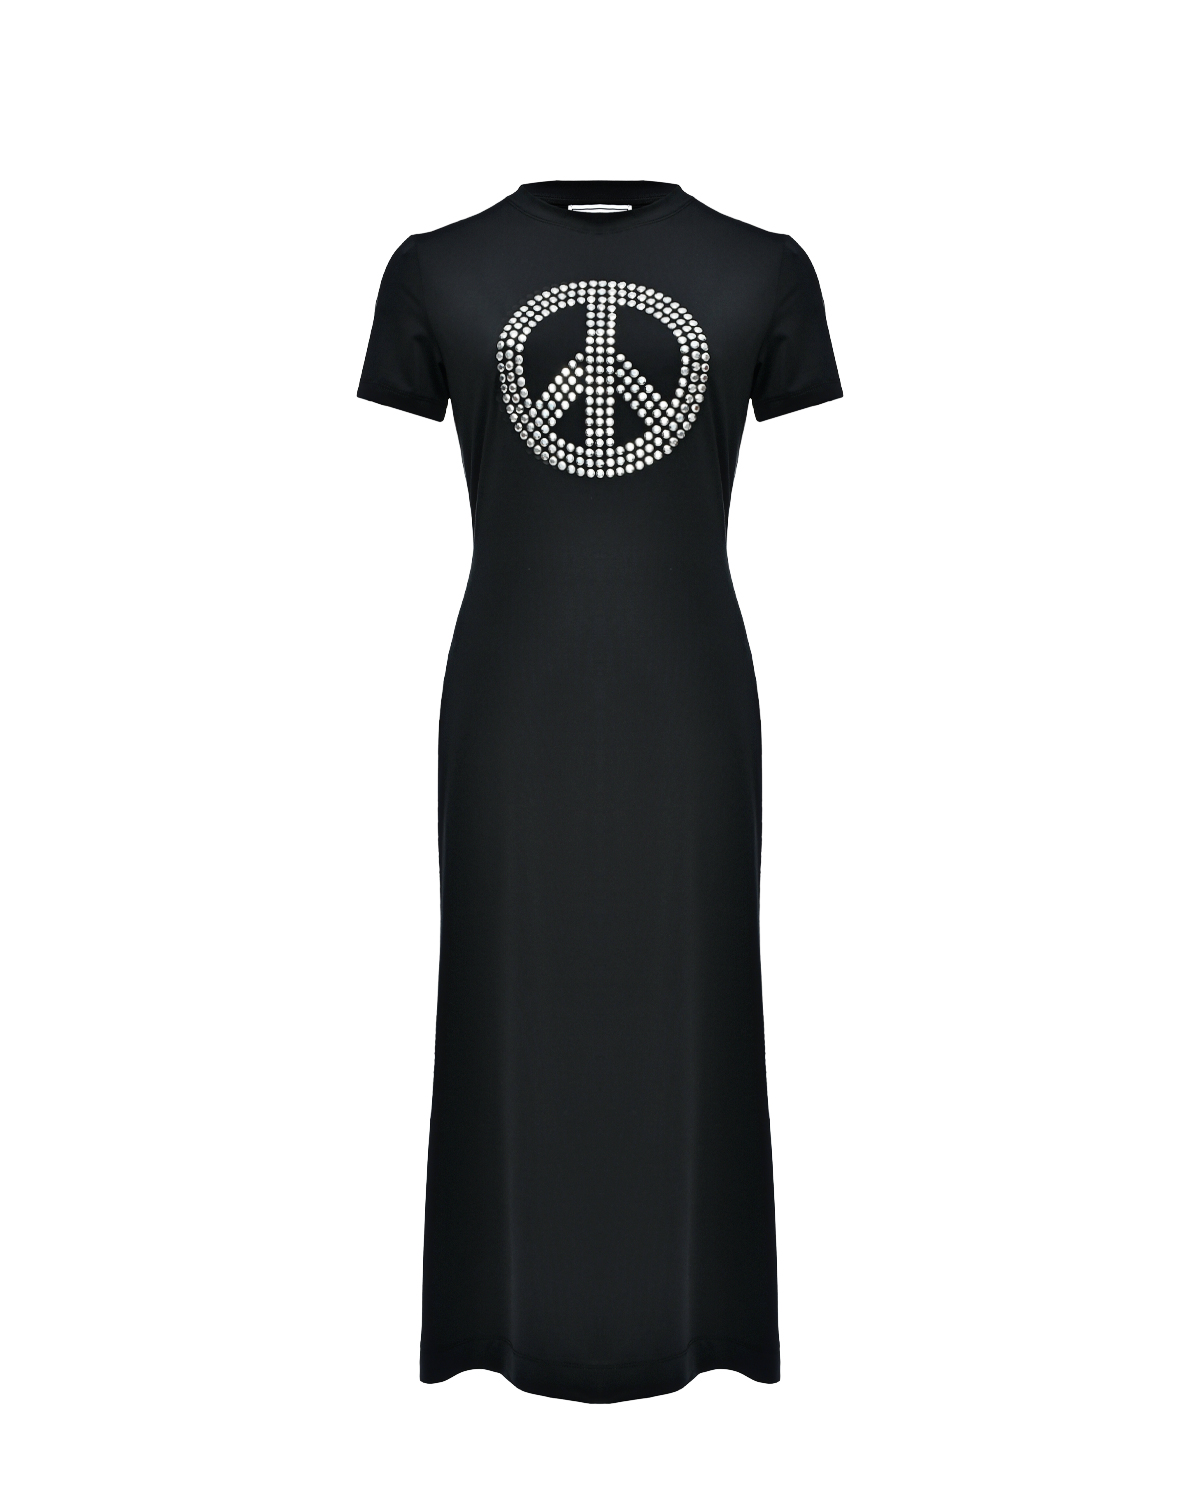 Платье с декором "Pacific" из стразов Mo5ch1no Jeans, размер 40, цвет черный - фото 1